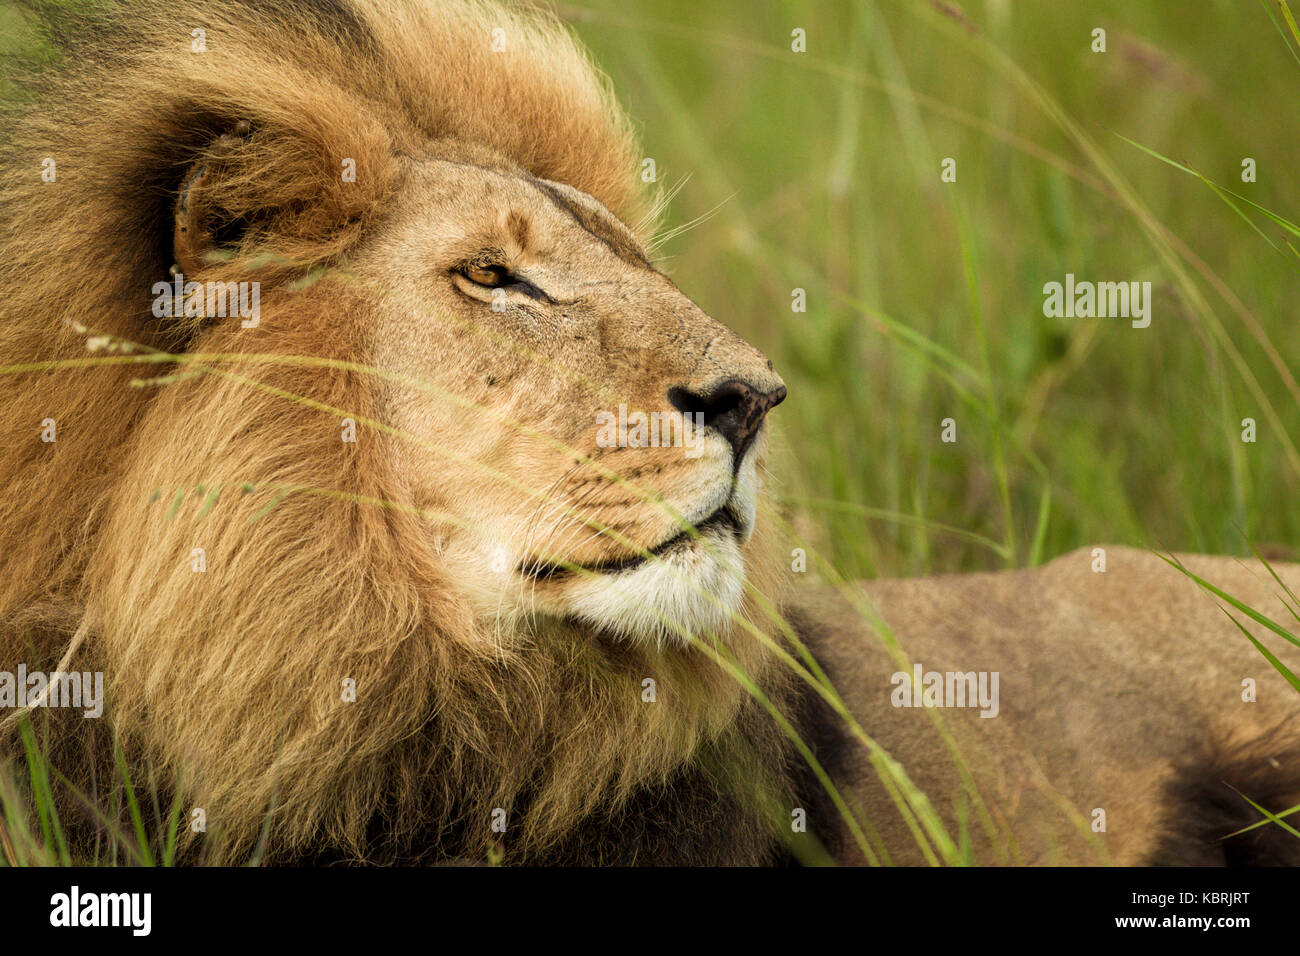 Schöner männlicher Löwe (panthera leo) mit einer riesigen Mähne, die im Gras liegt und mit Absicht über die Ebenen nach rechts schaut Stockfoto